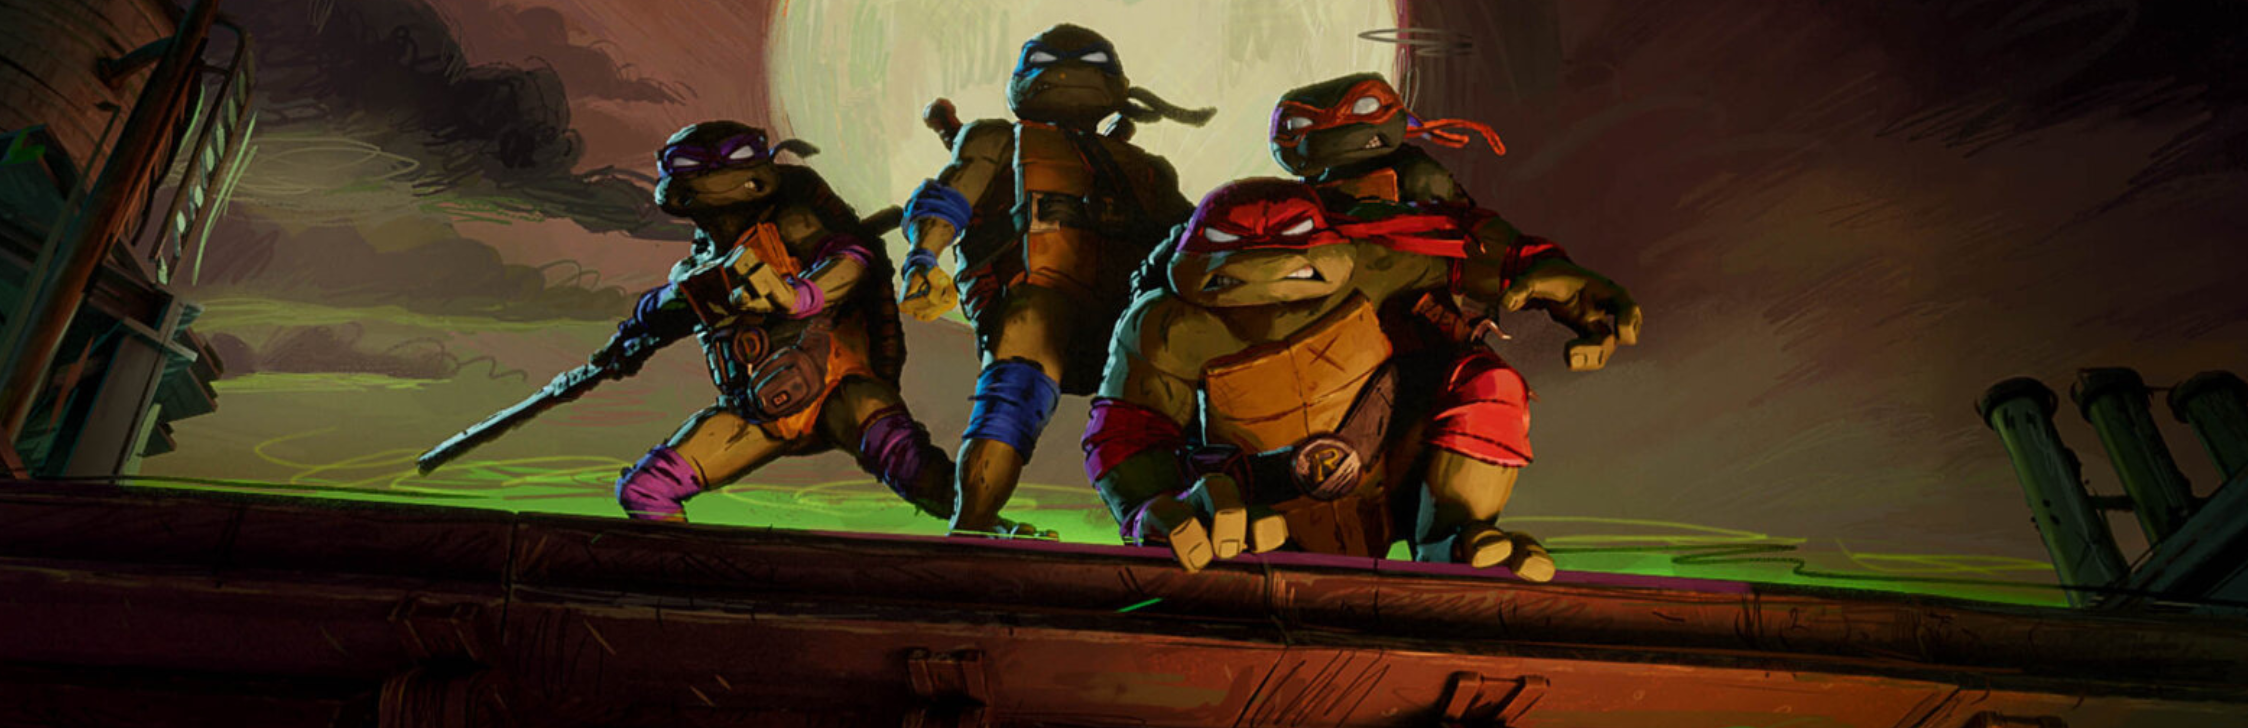 Mutant Origins: Donatello (Teenage Mutant Ninja Turtles) eBook by